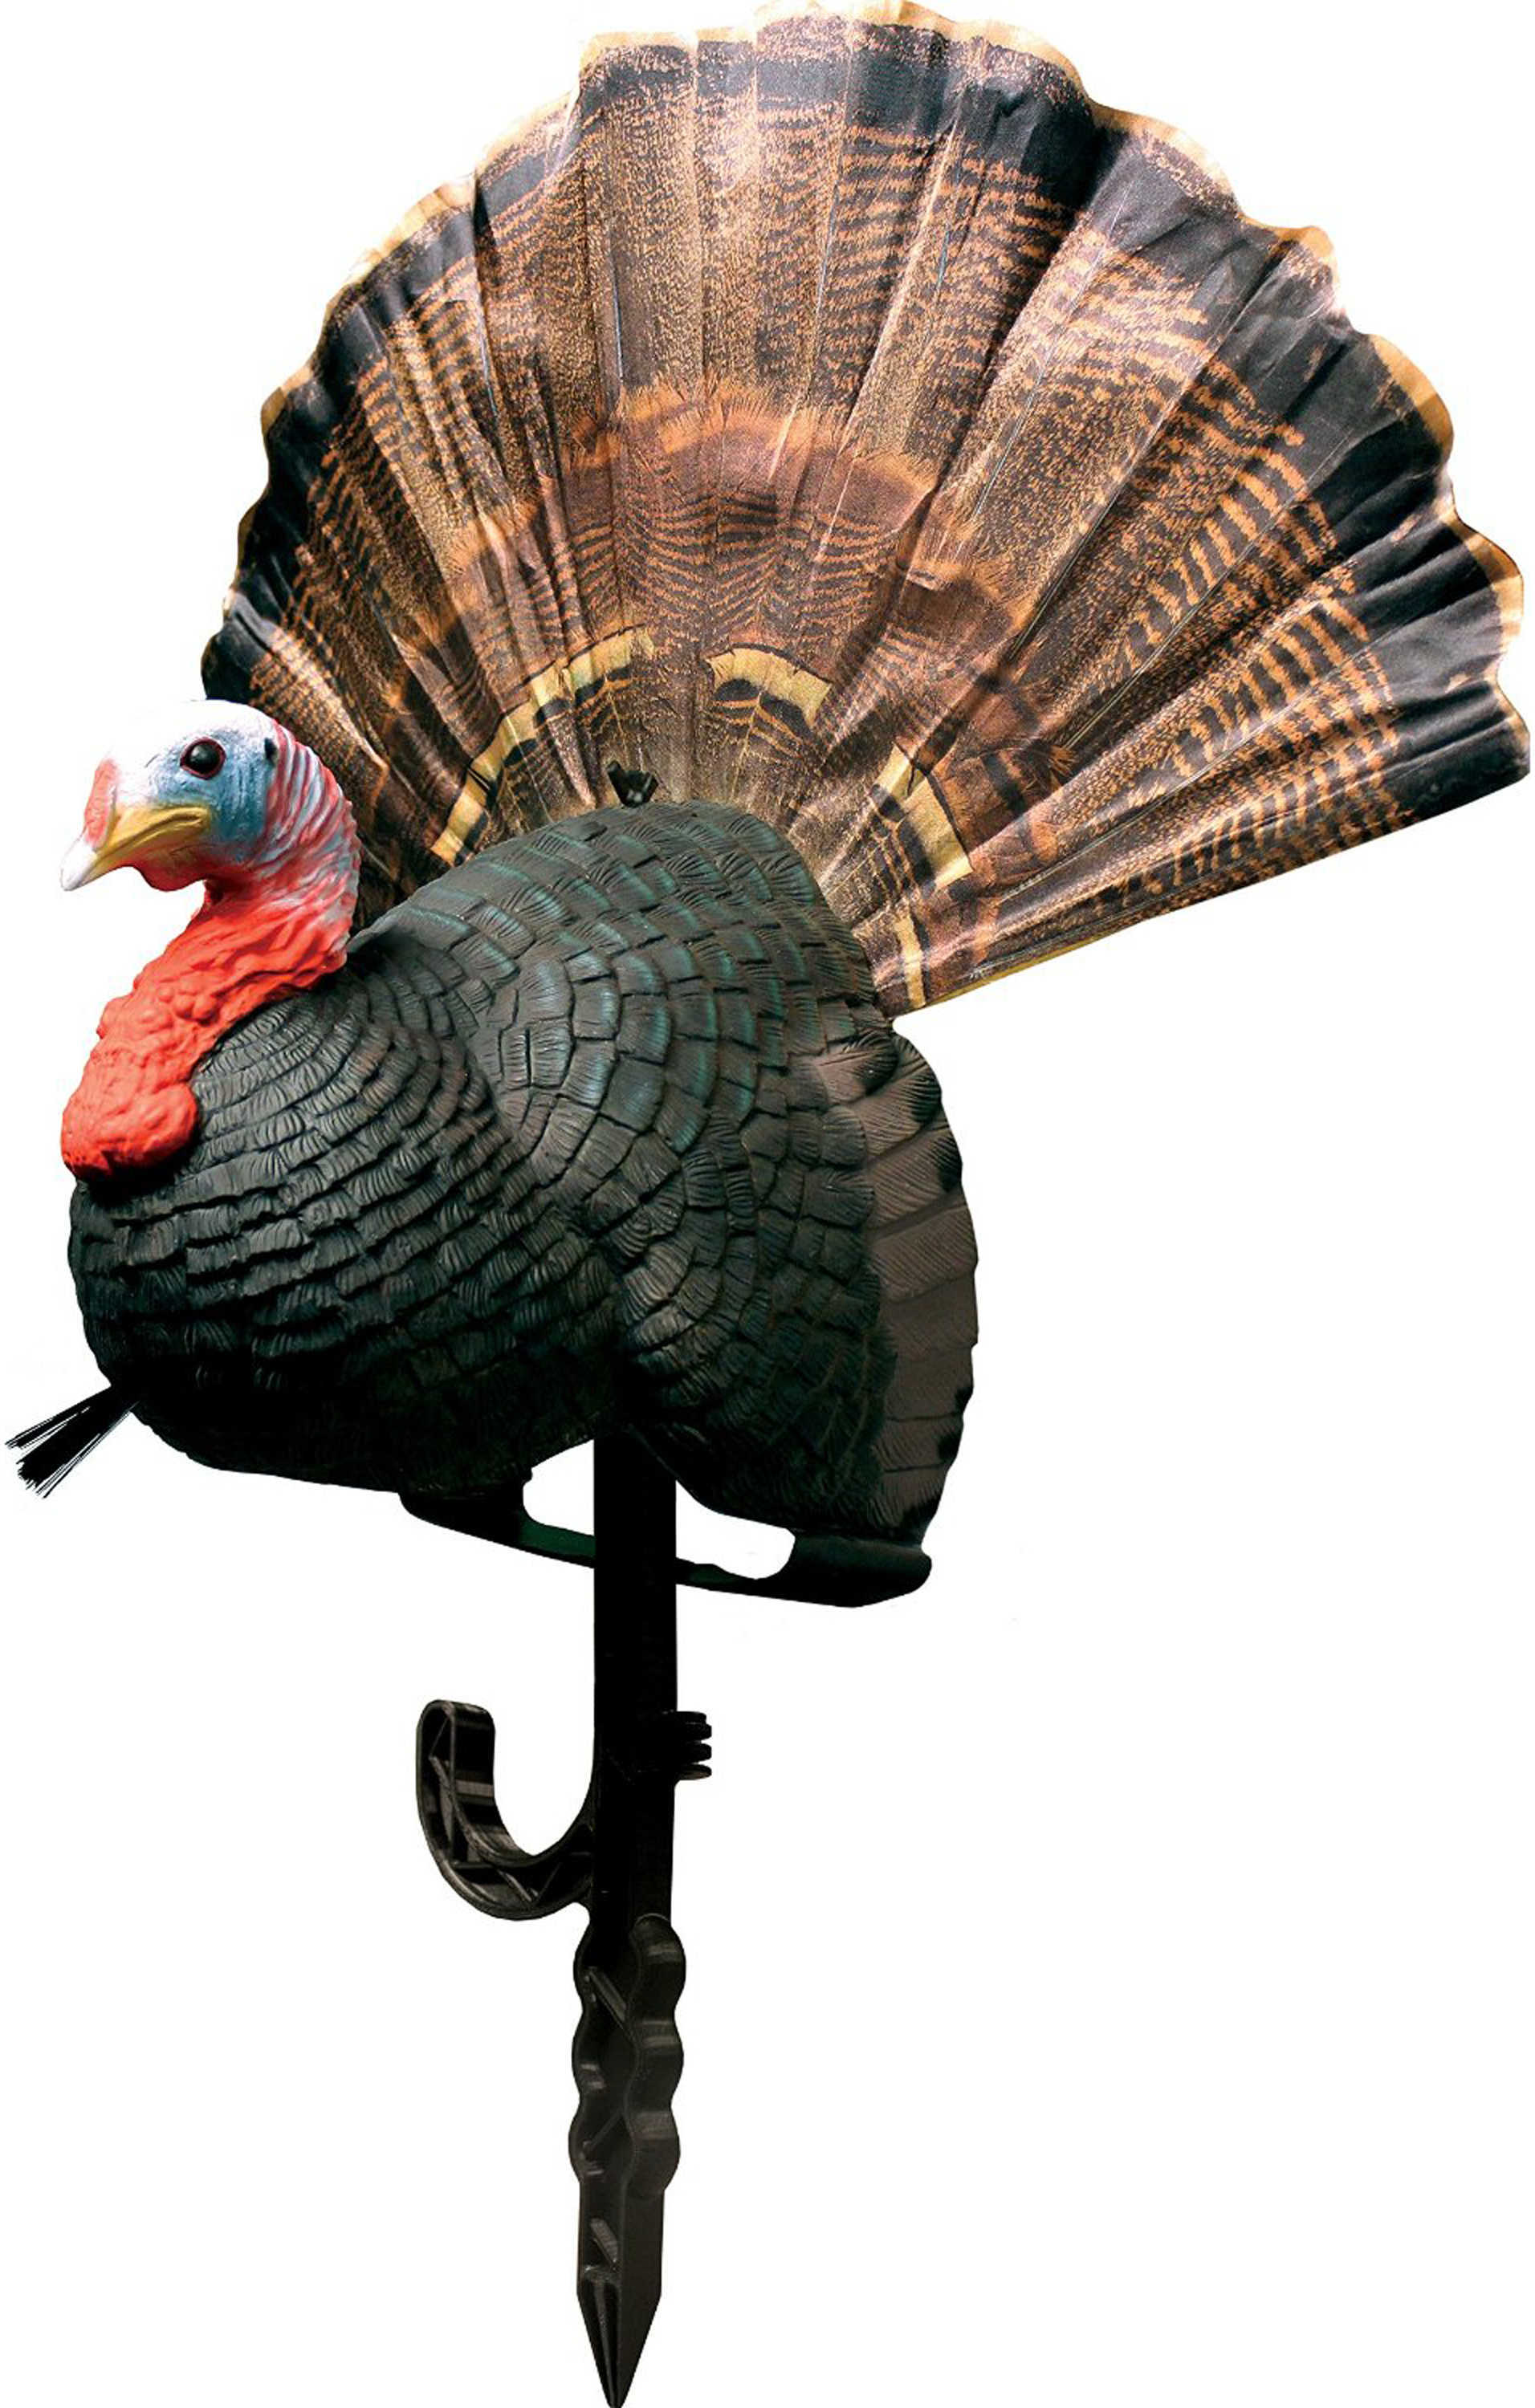 Primos Turkey Decoy Chicken On A Stick Model: 69067